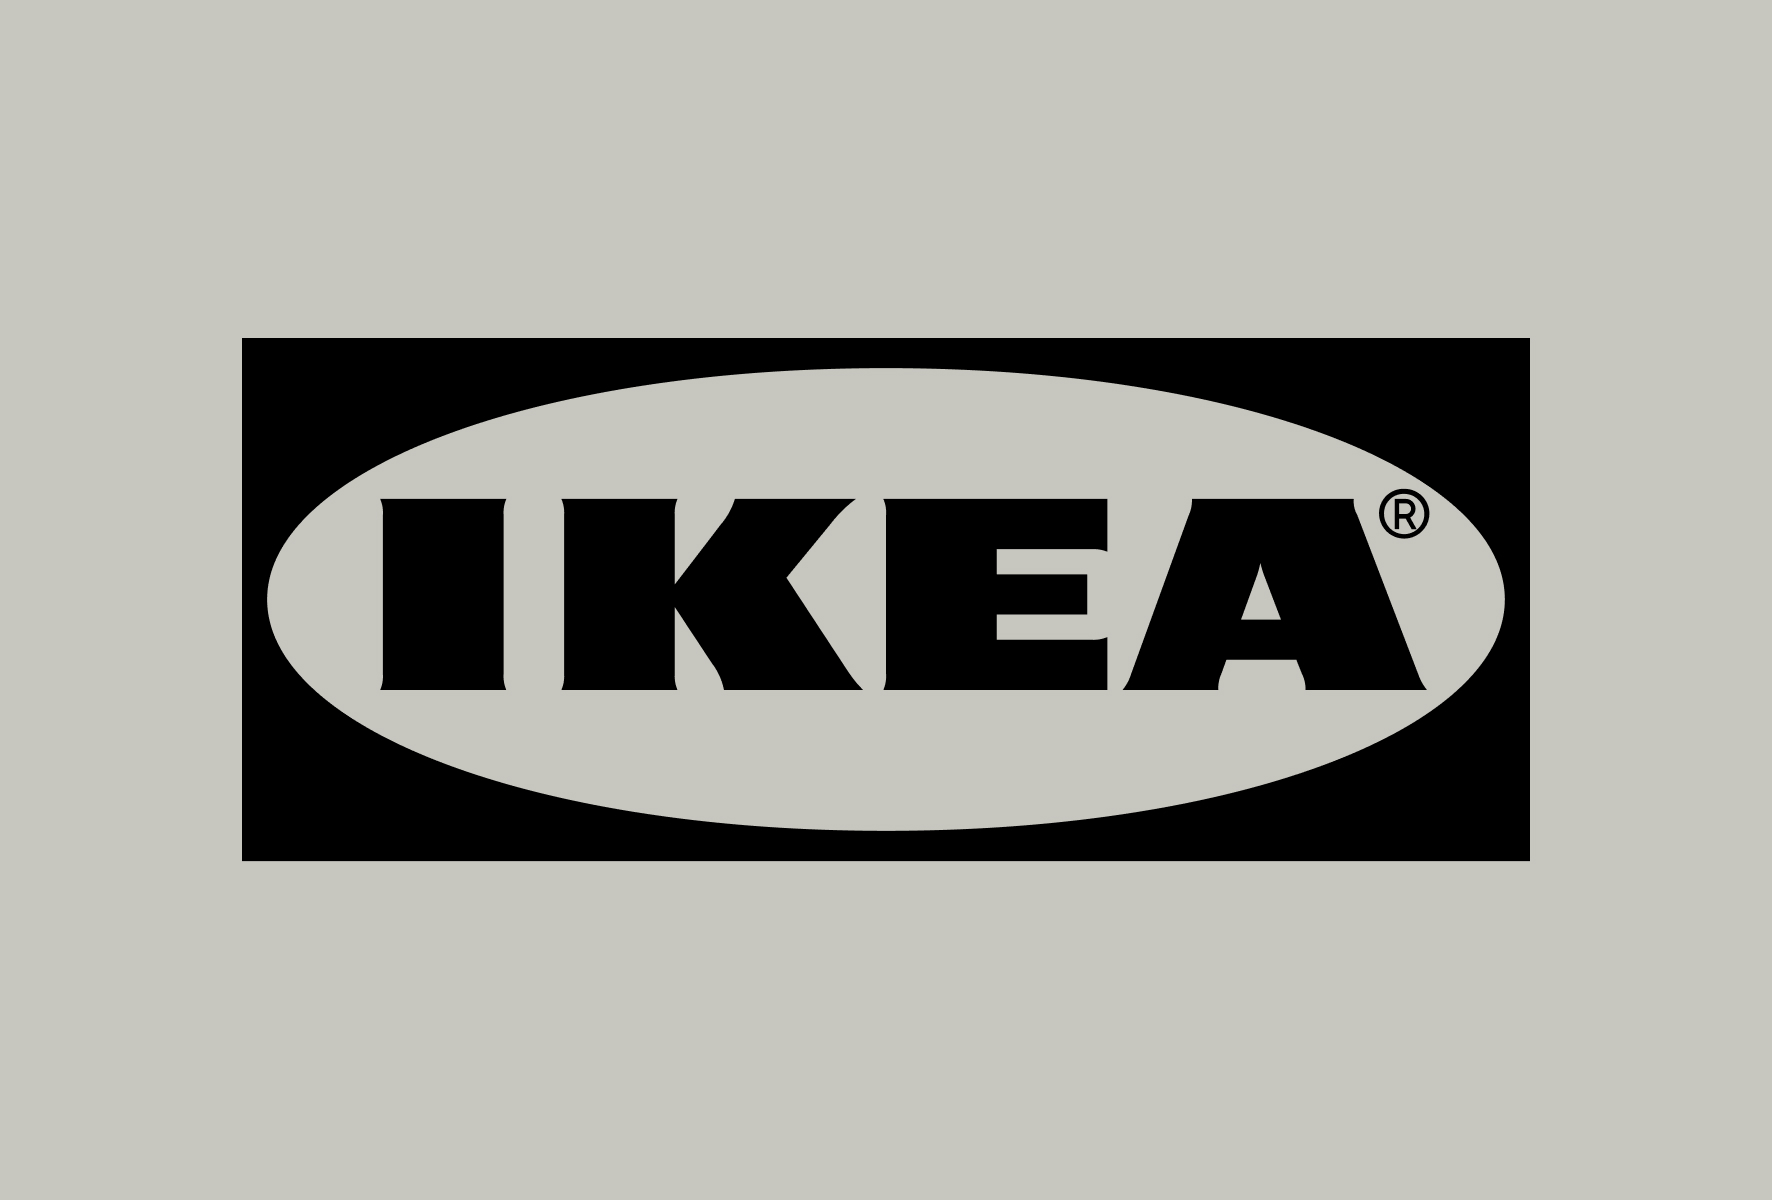 Famous Logos part XI - IKEA